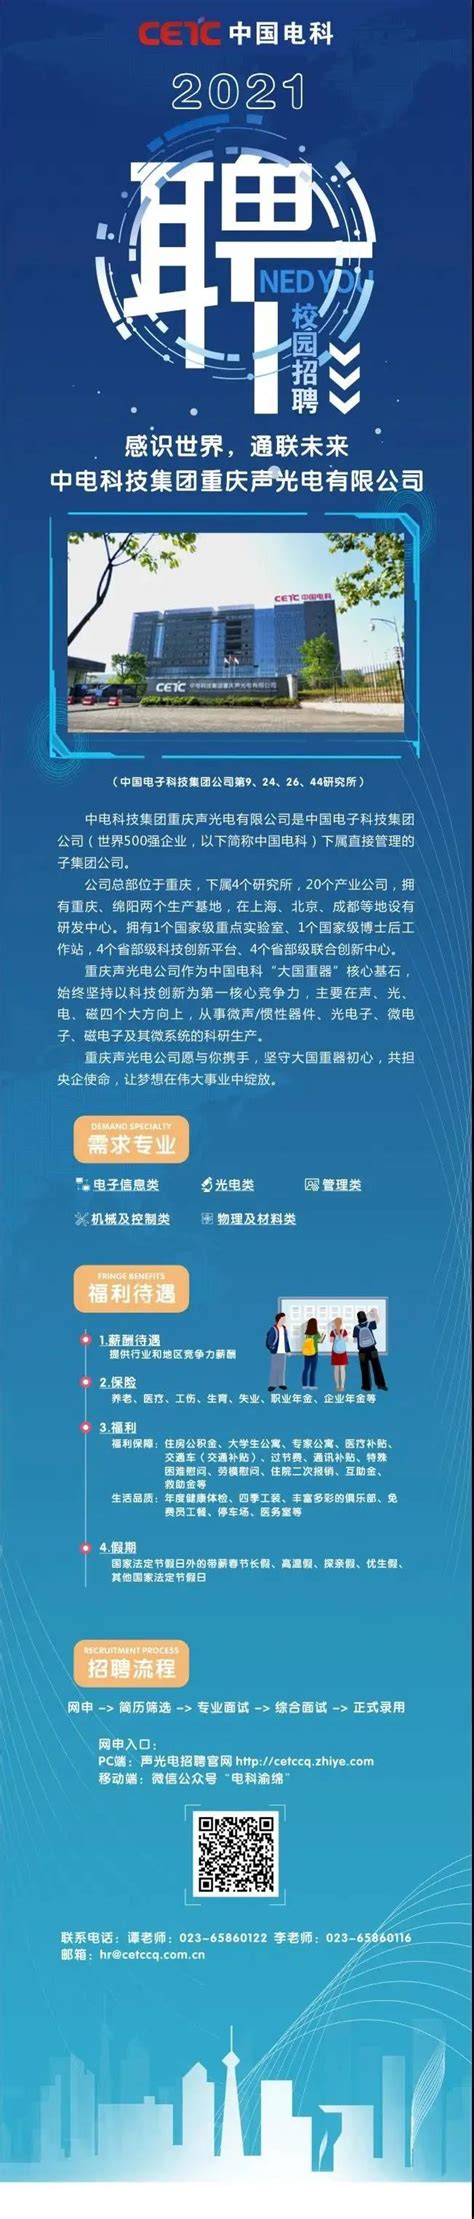 天浩工程技术服务（天津）有限公司招聘简介-待遇怎么样-石油人才网